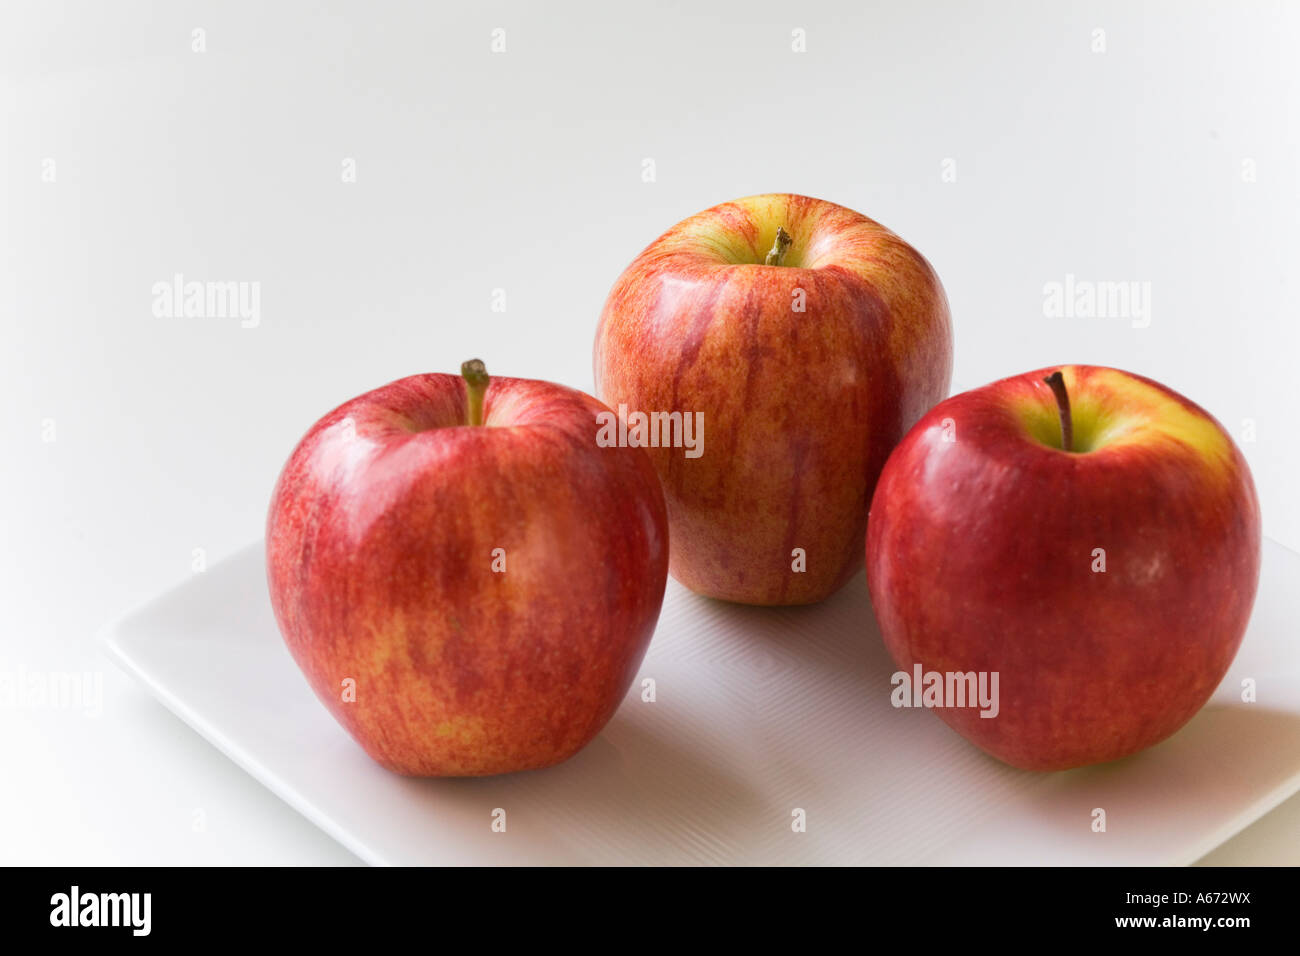 Включи 3 яблока. Яблоко. 3 Яблока. Семь яблок. Яблоки 3 штуки.